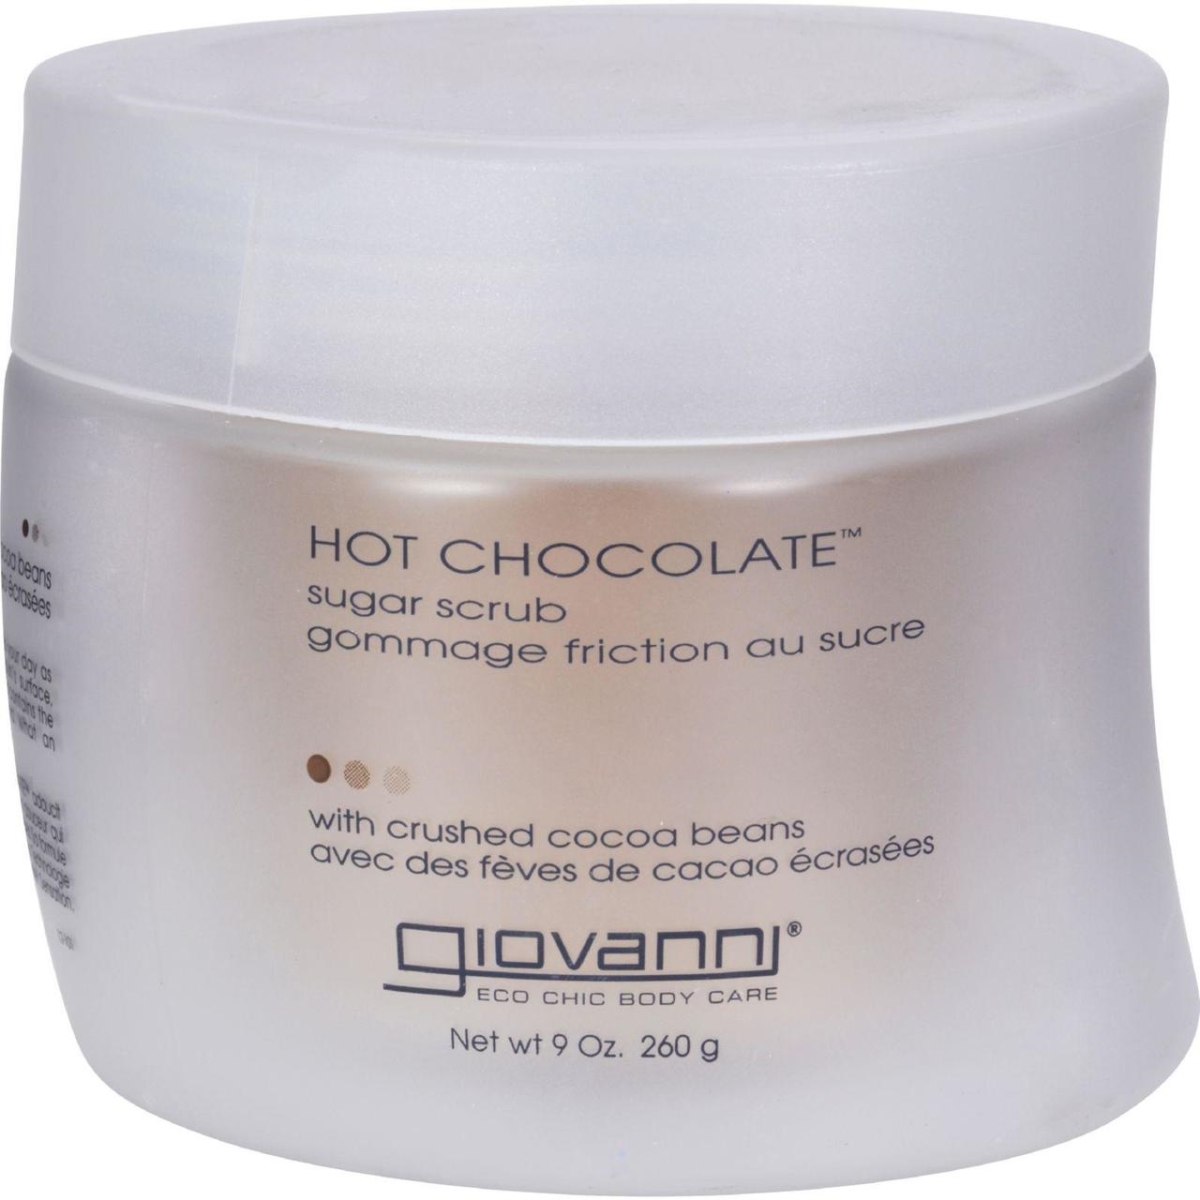 Hg0750877 9 Oz Sugar Scrub Hot Chocolate